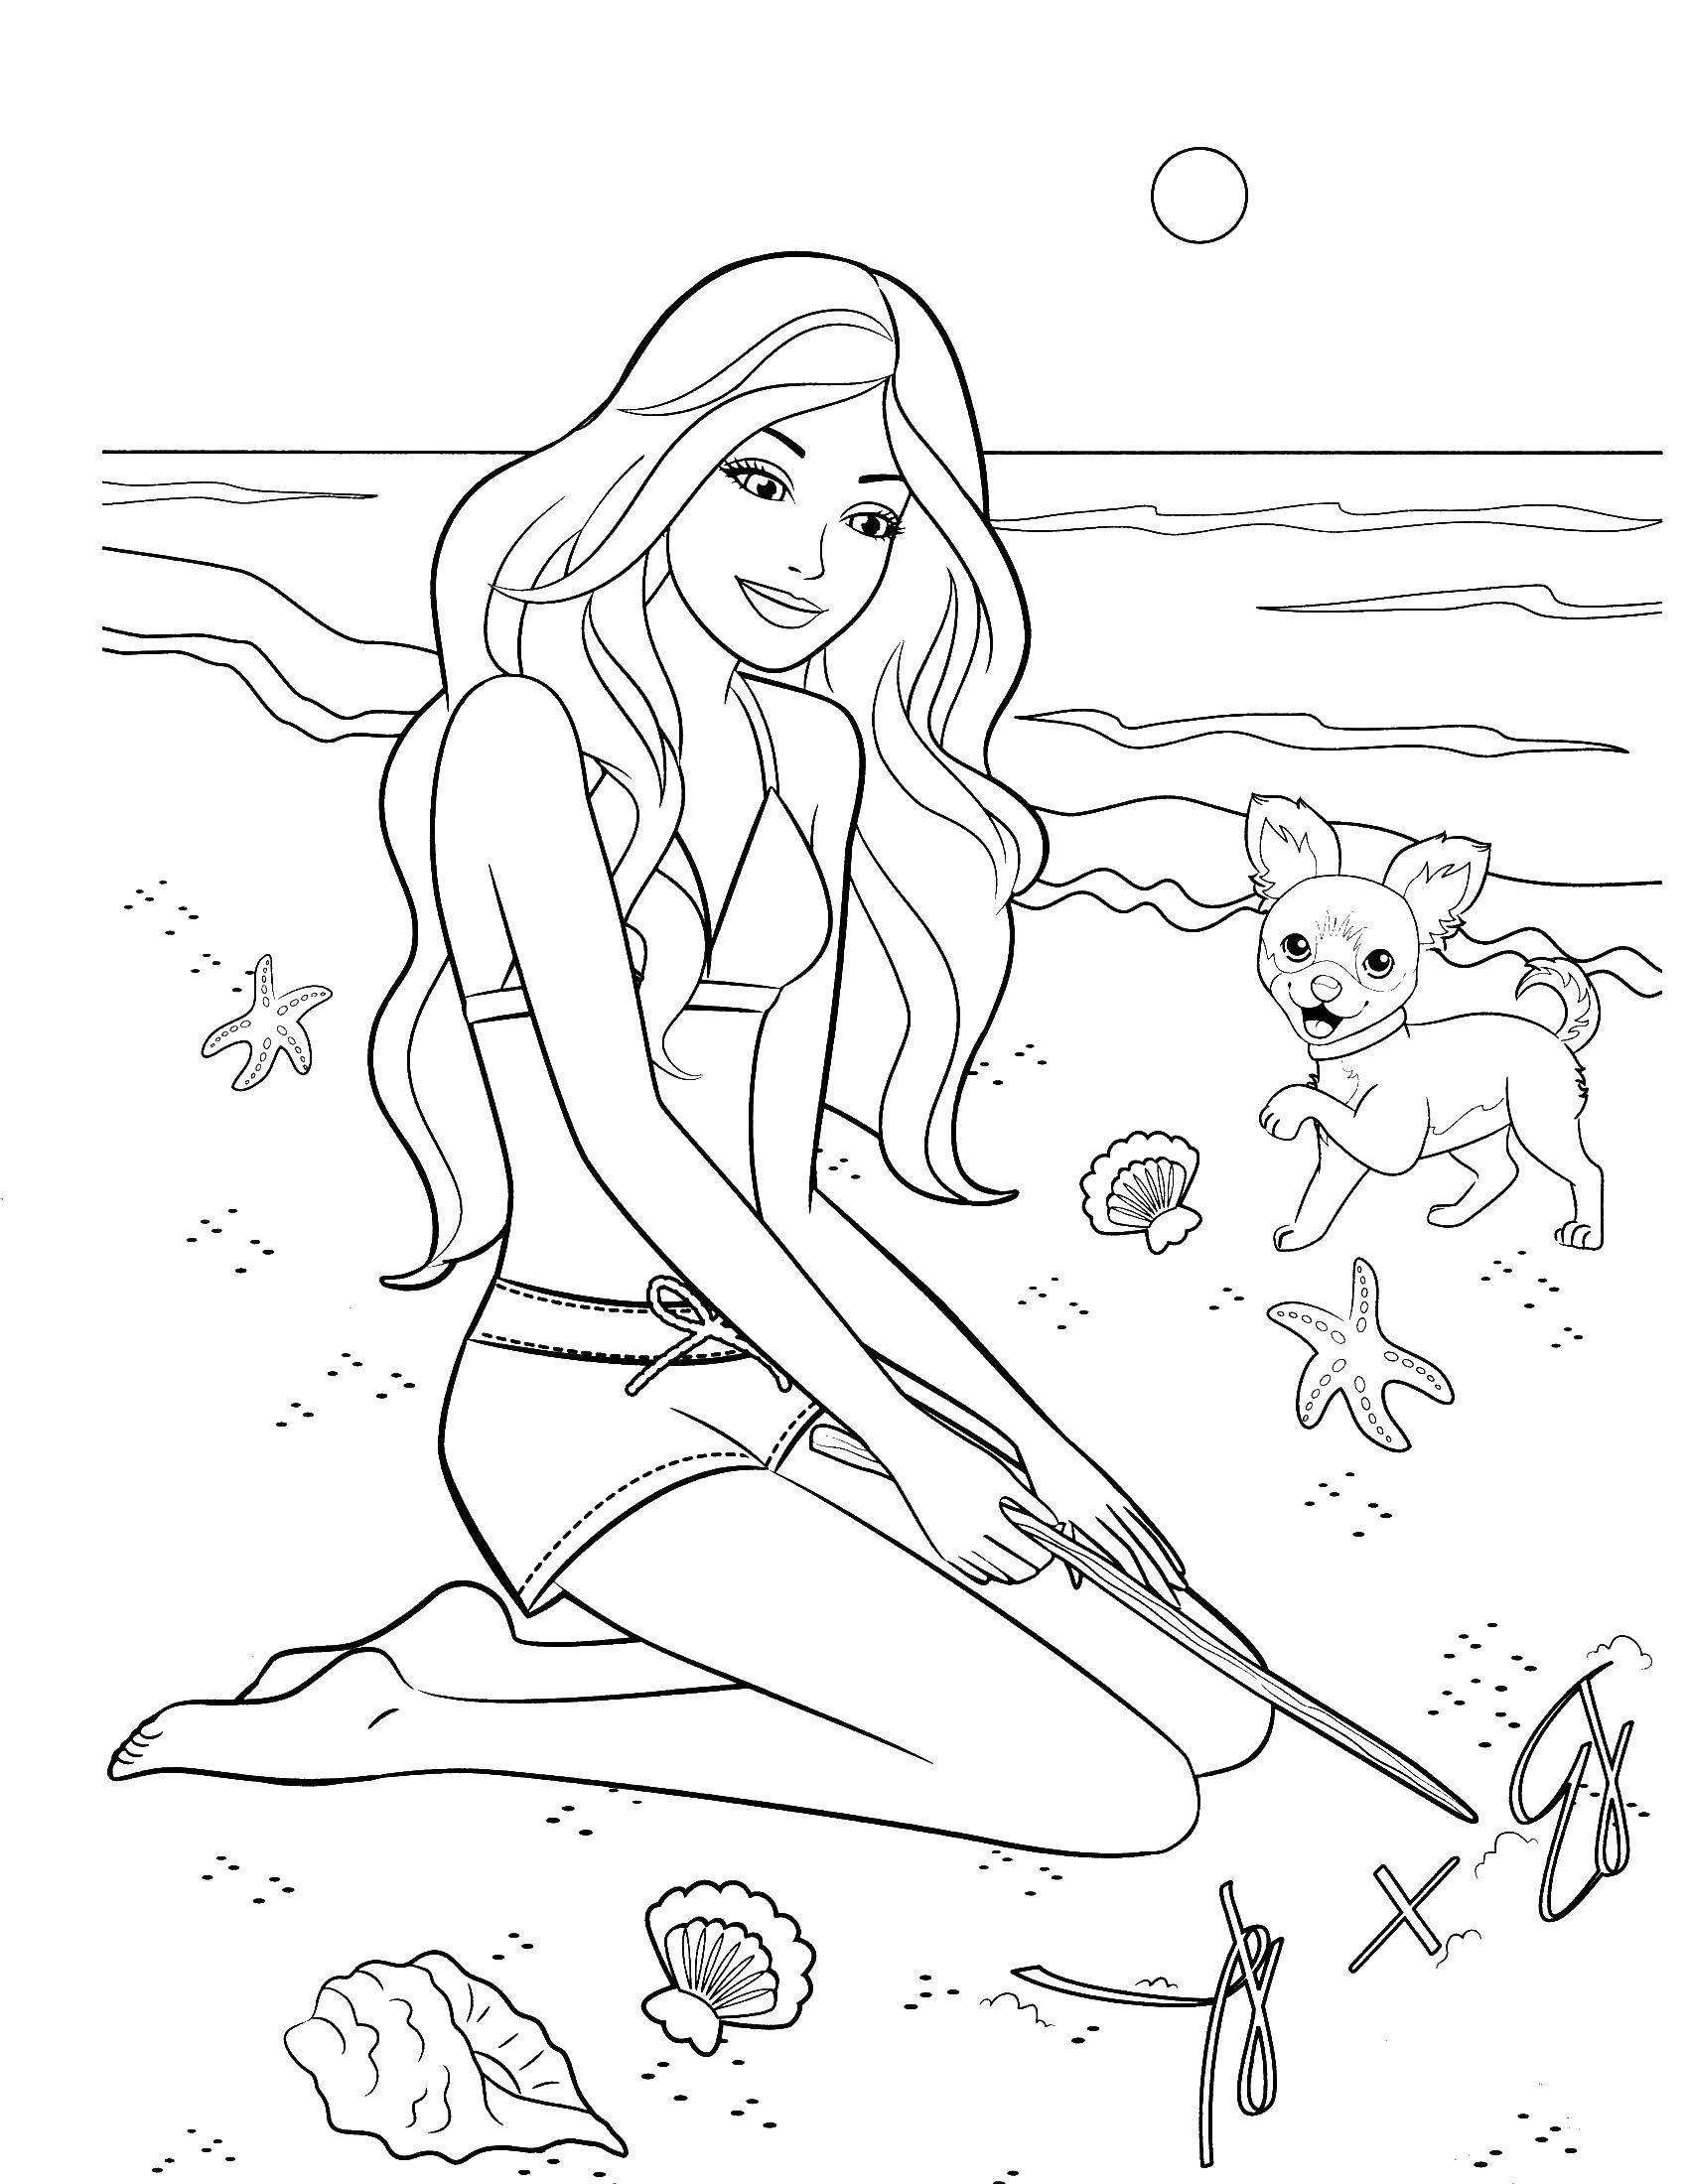 Опис: розмальовки  Барбі зі своєю собачкою на пляжі. Категорія: Барбі. Теги:  барбі, дівчинка, лялька.